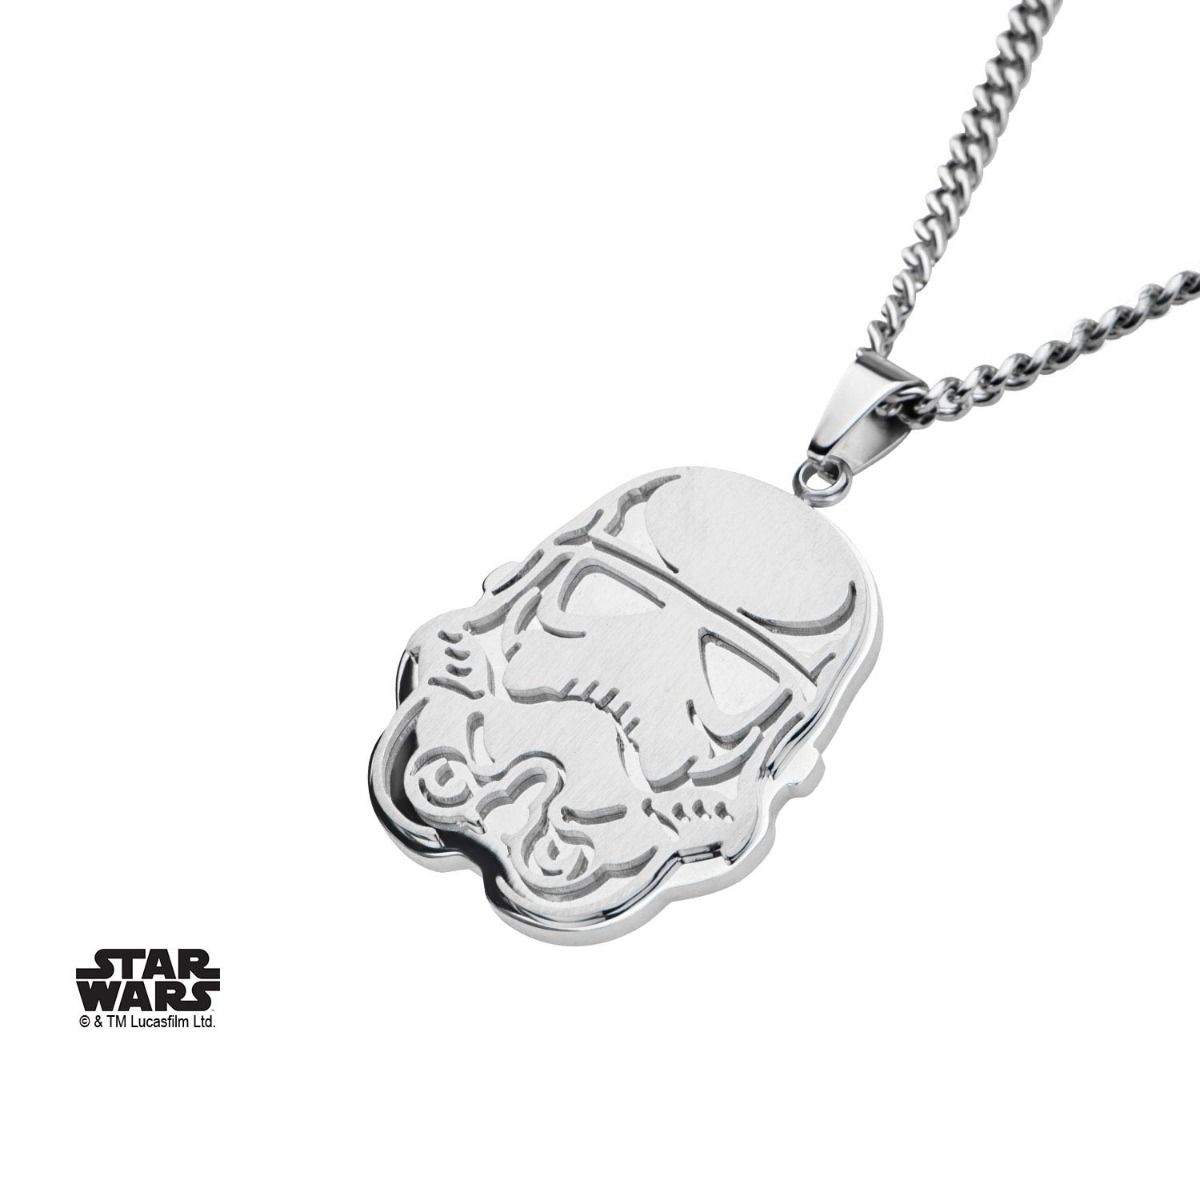 STAR WARS Star Wars Stormtrooper Pendant Necklace -Rebel Bod-RebelBod